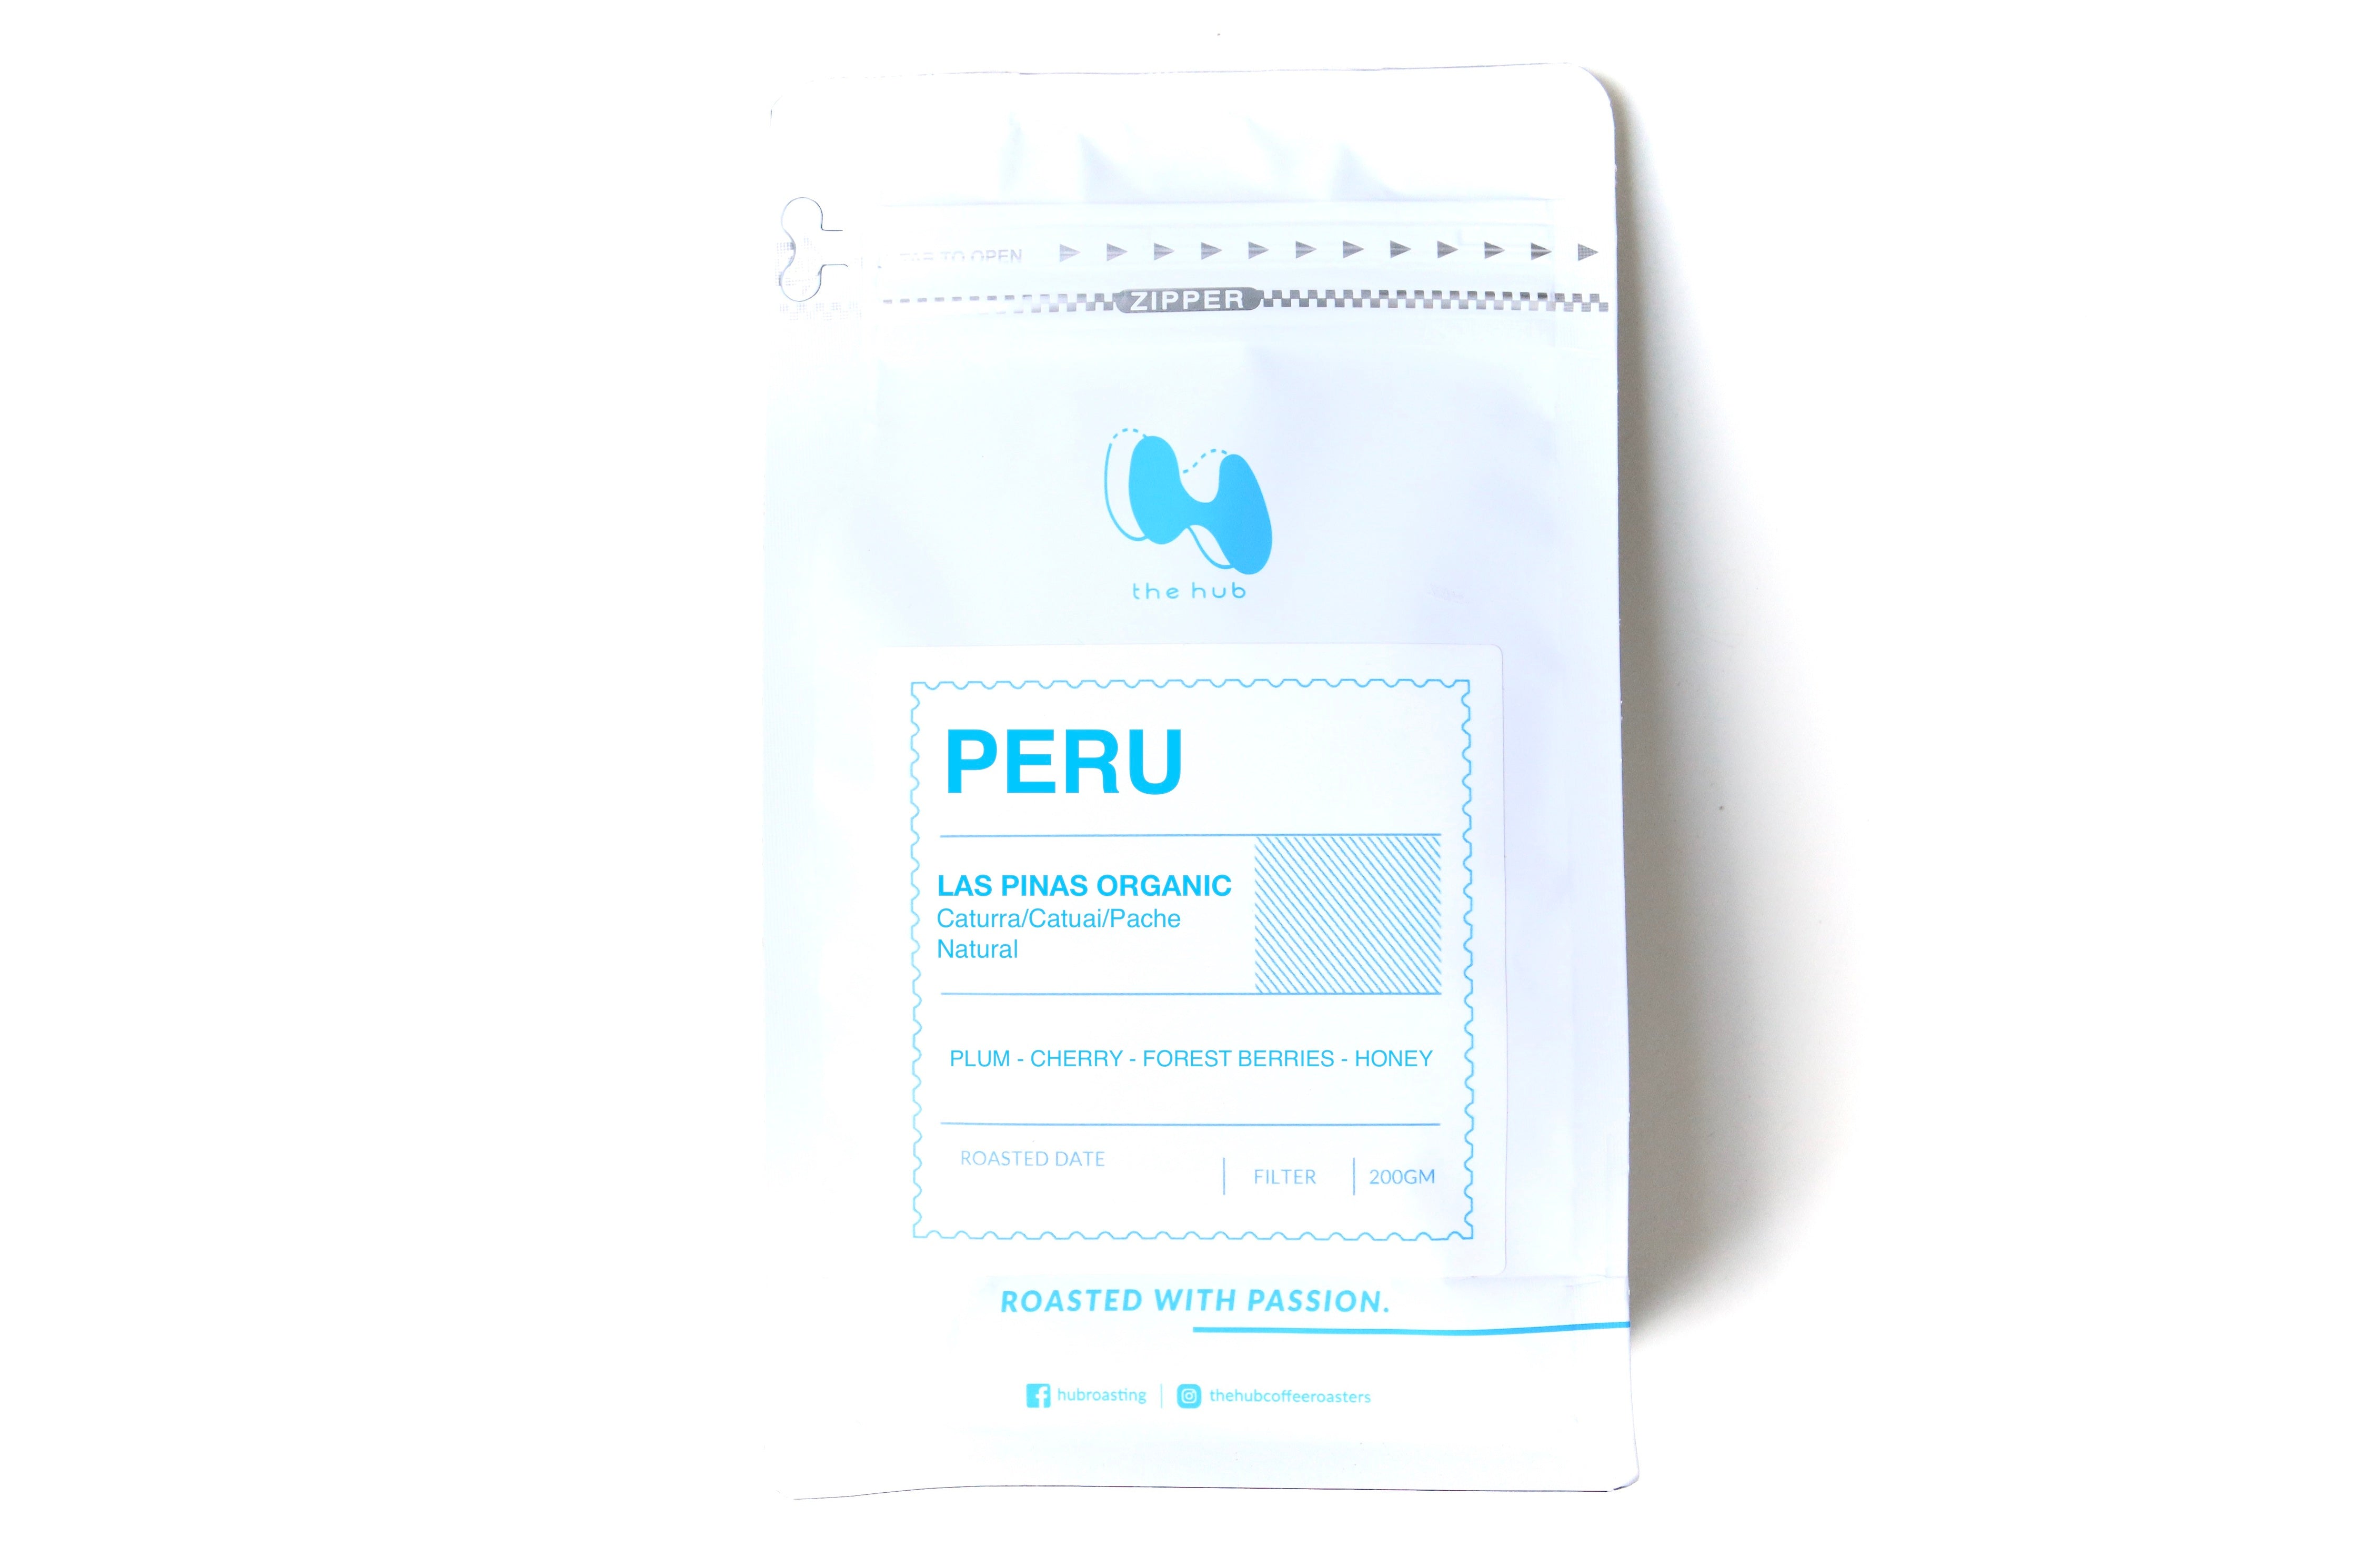 Peru Las Pinas Organic